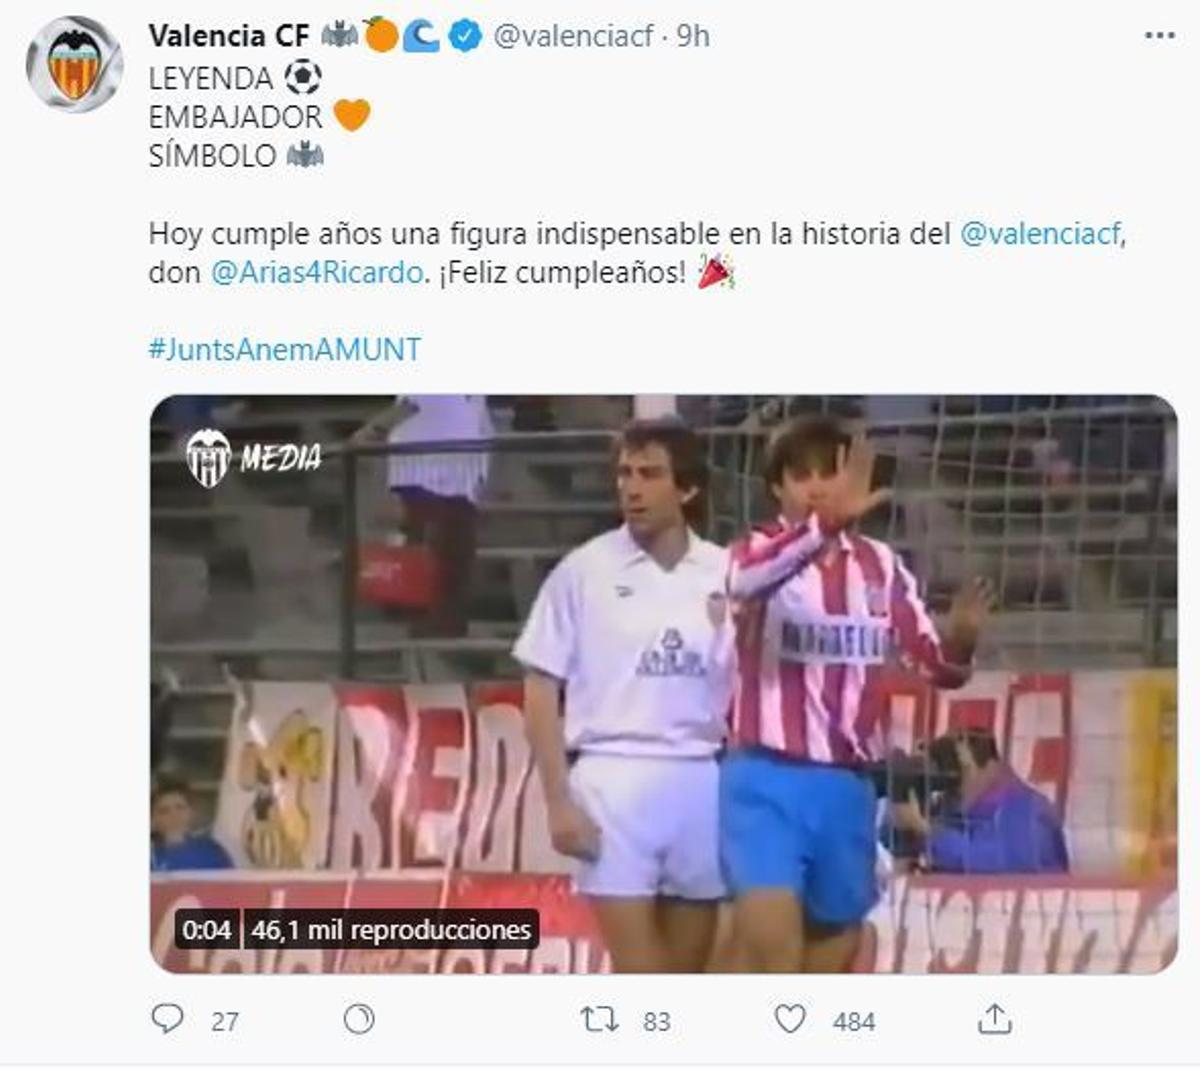 El homenaje del Valencia CF a Arias por su cumpleaños